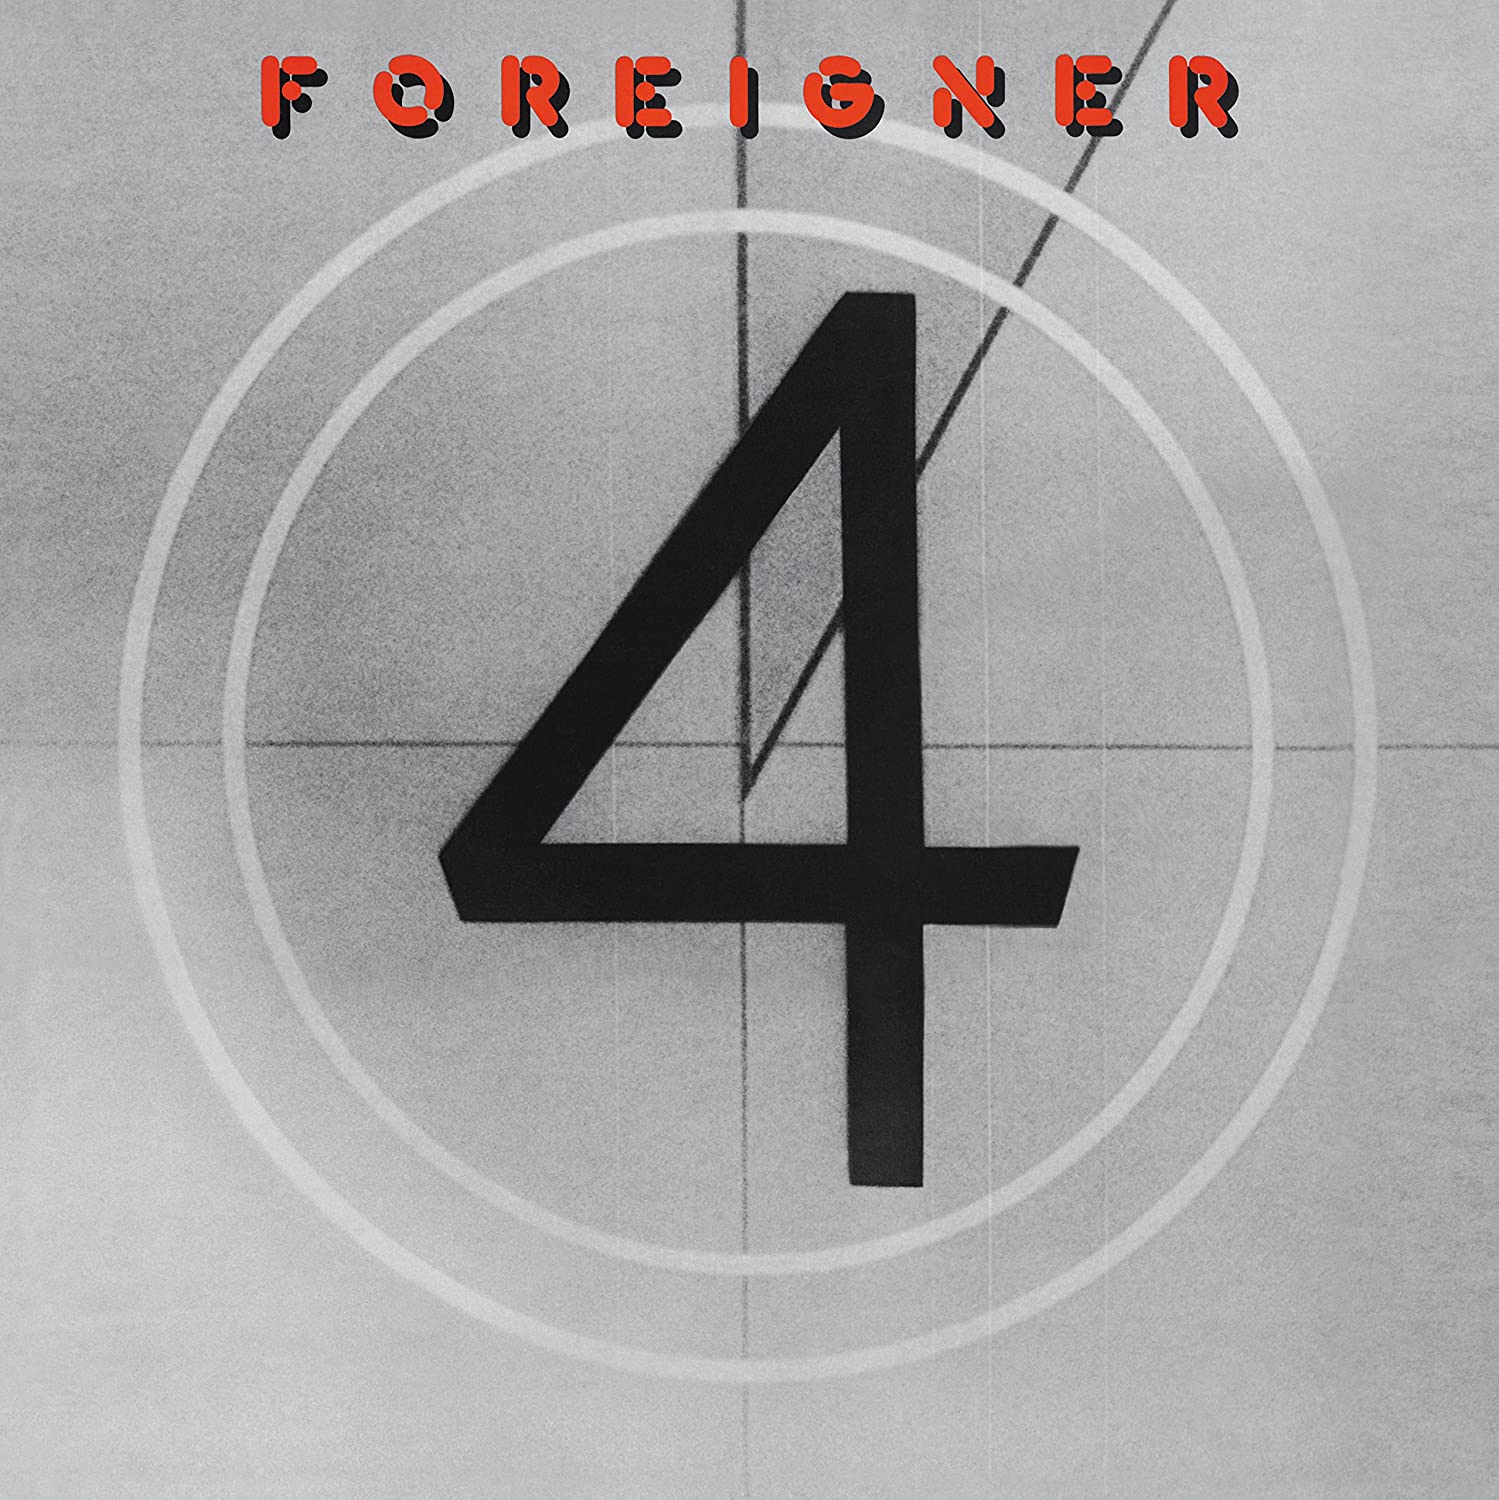 Foreigner - 4 (2013 180g reissue) - Vinyl - New